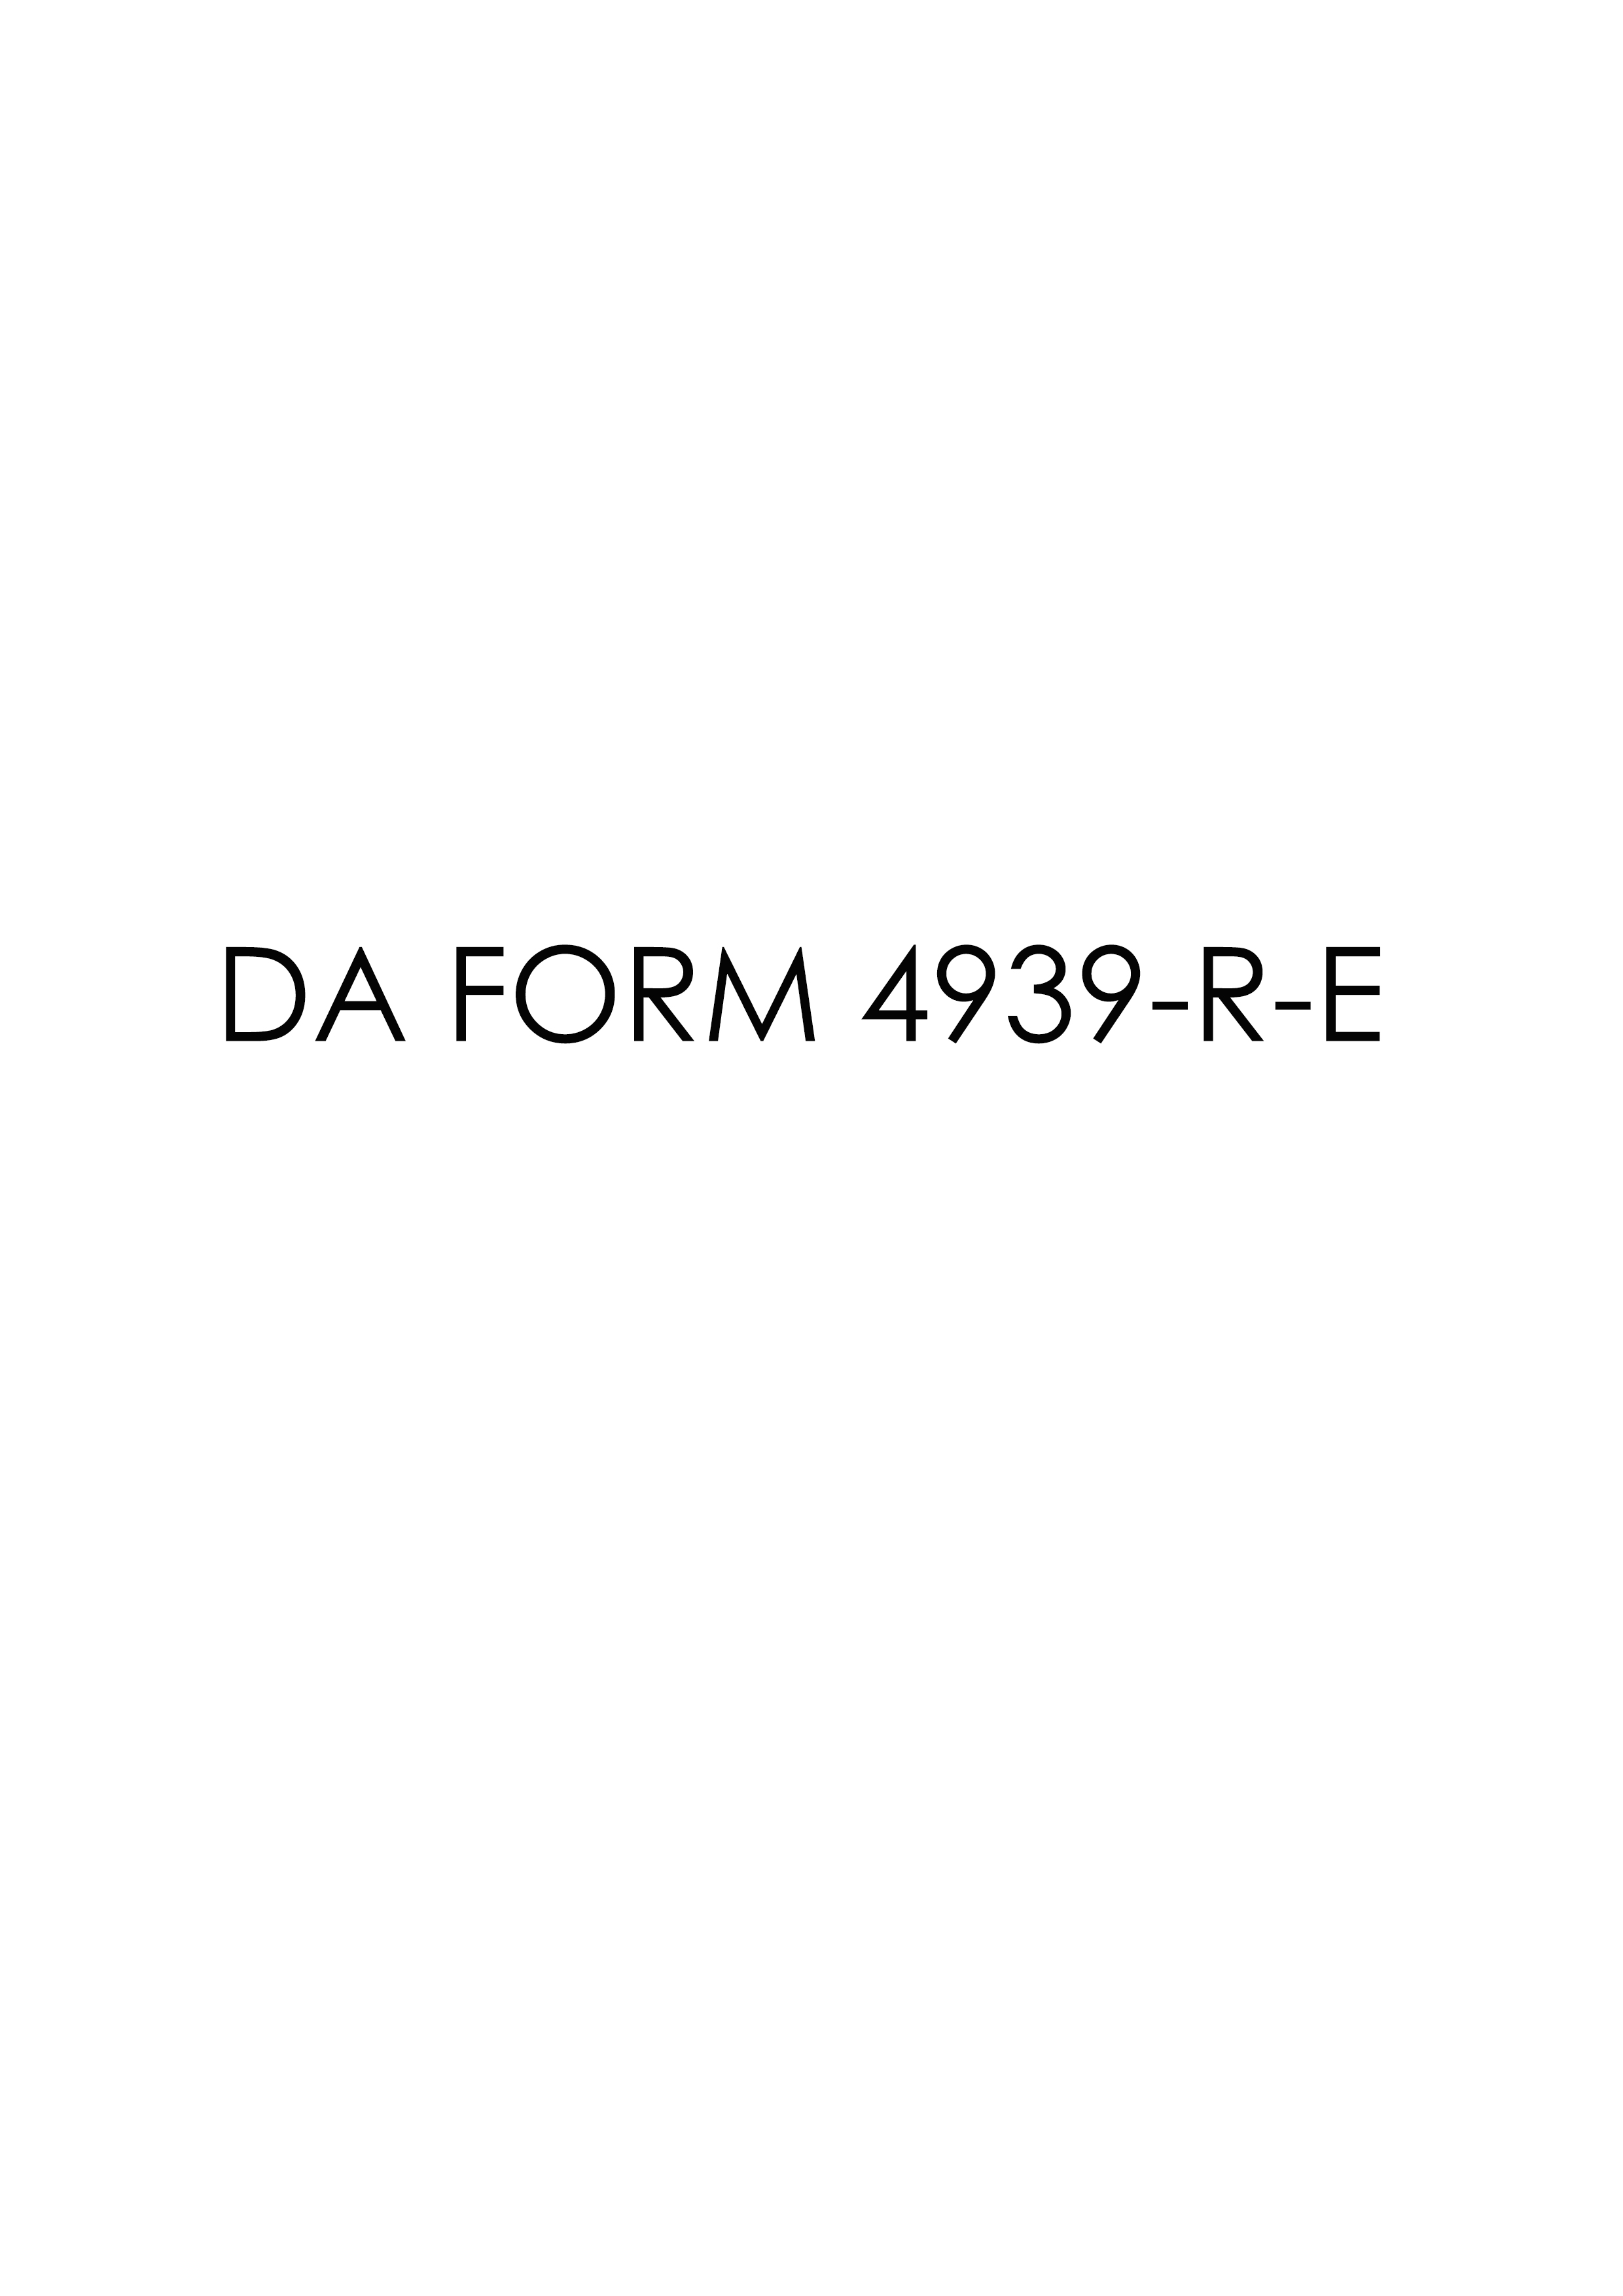 da Form 4939-R-E fillable